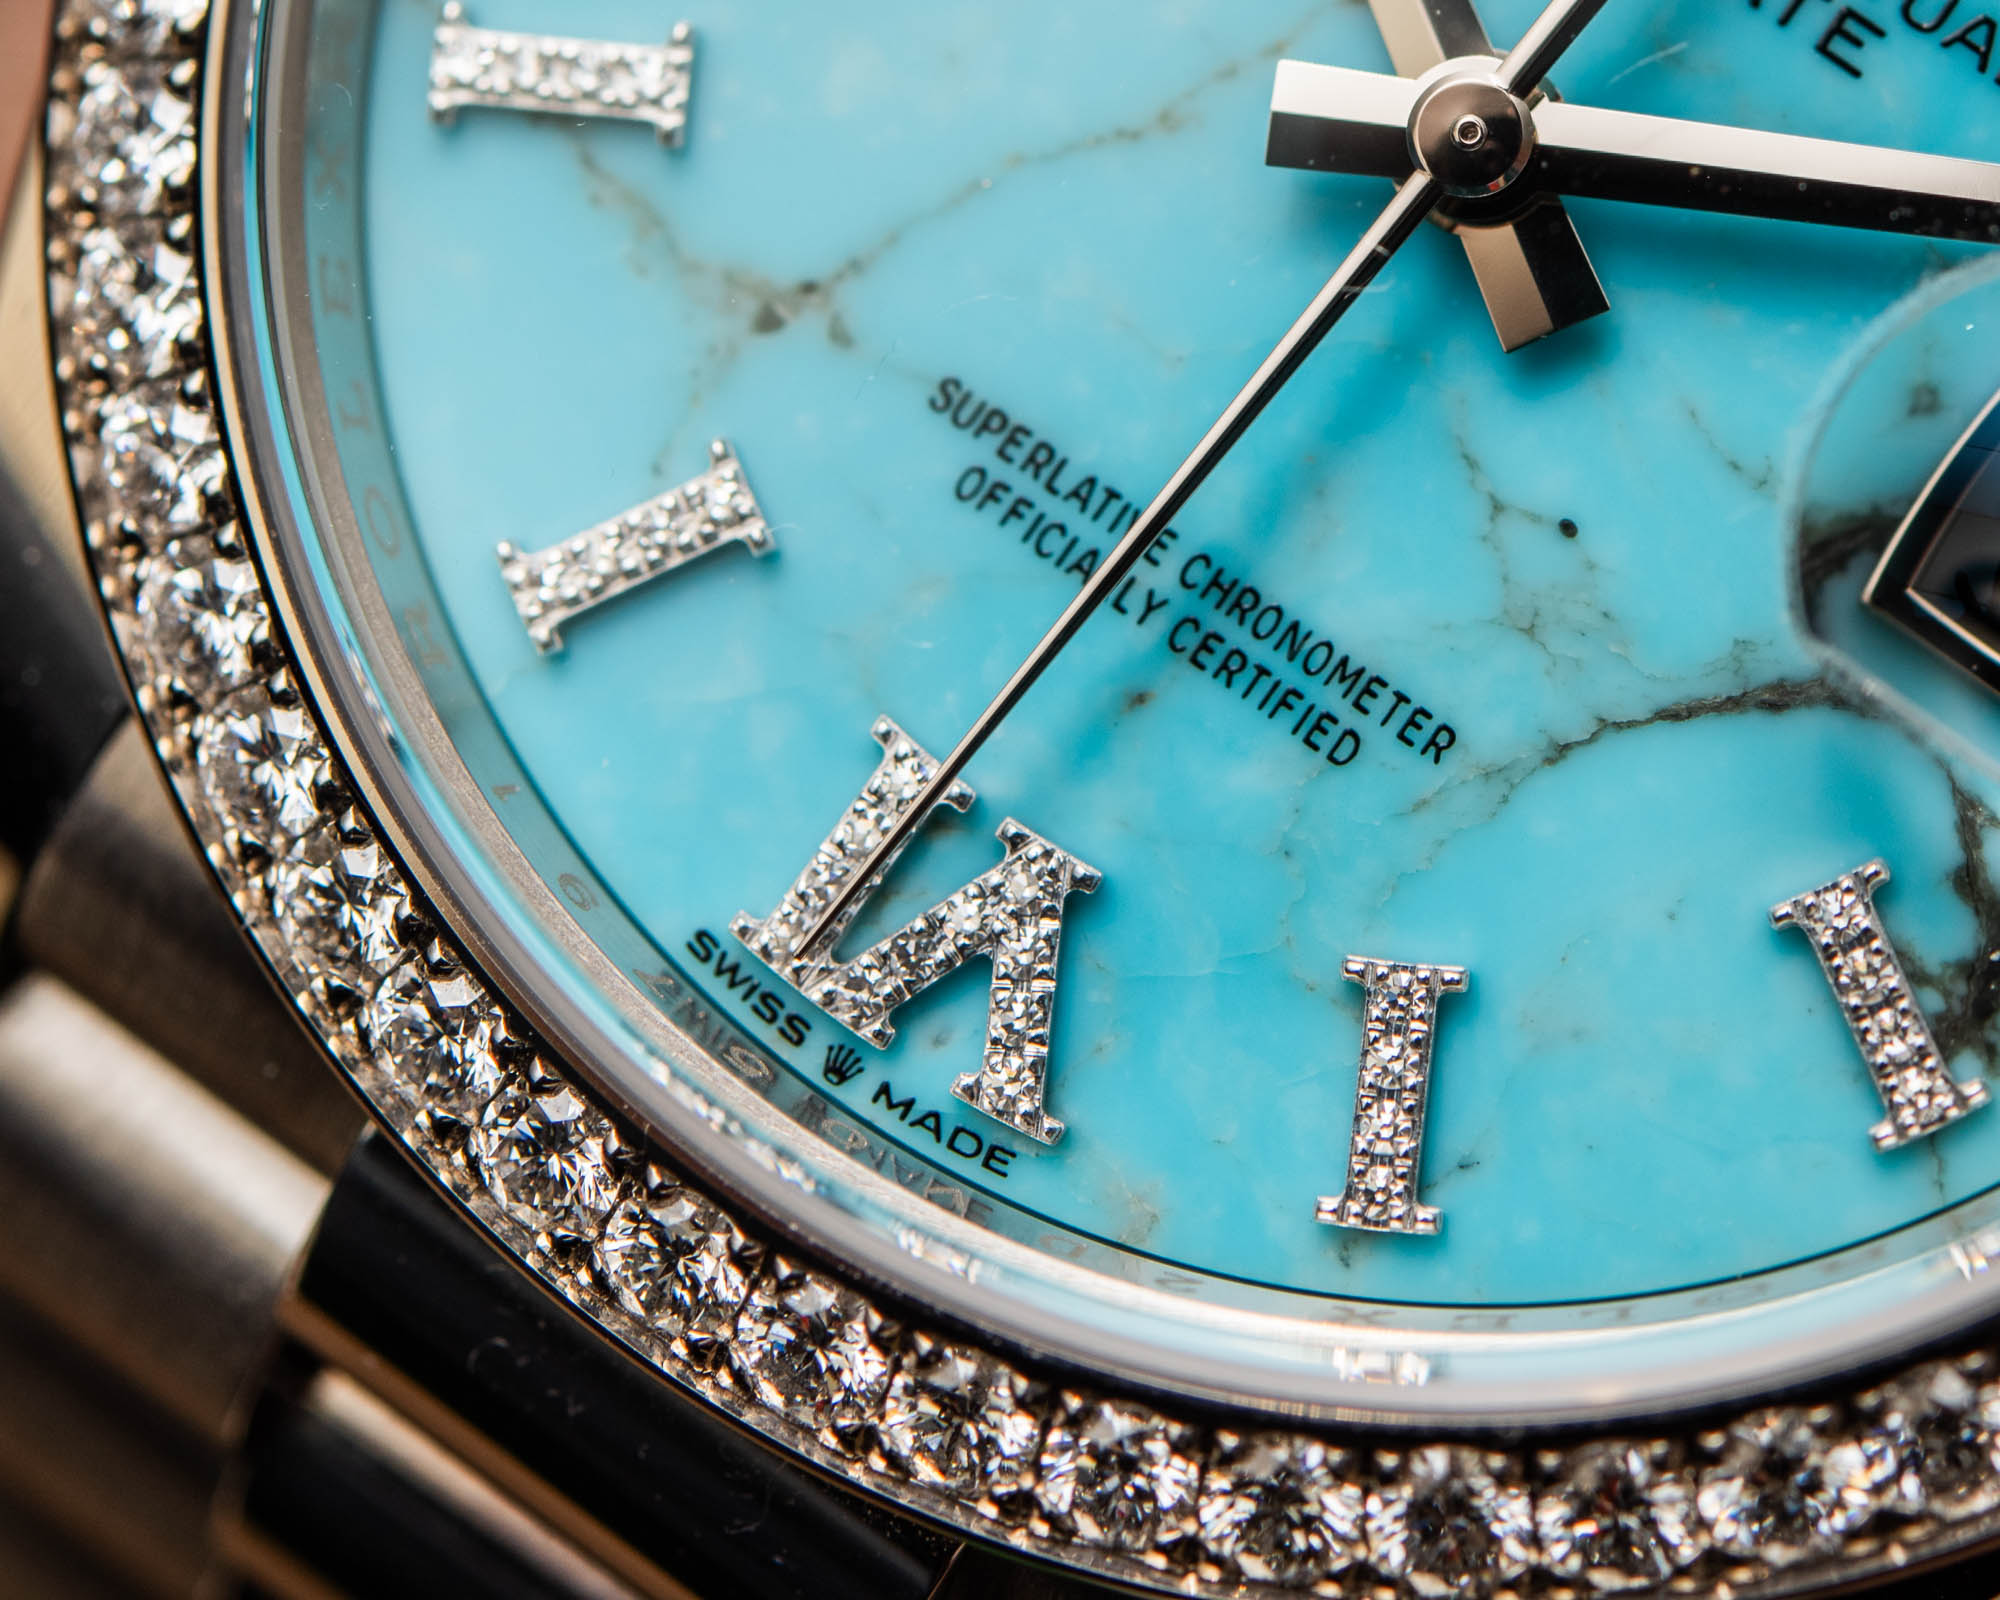 Часы Rolex Day-Date 36 с циферблатом из зеленого авантюрина и бирюзового камня